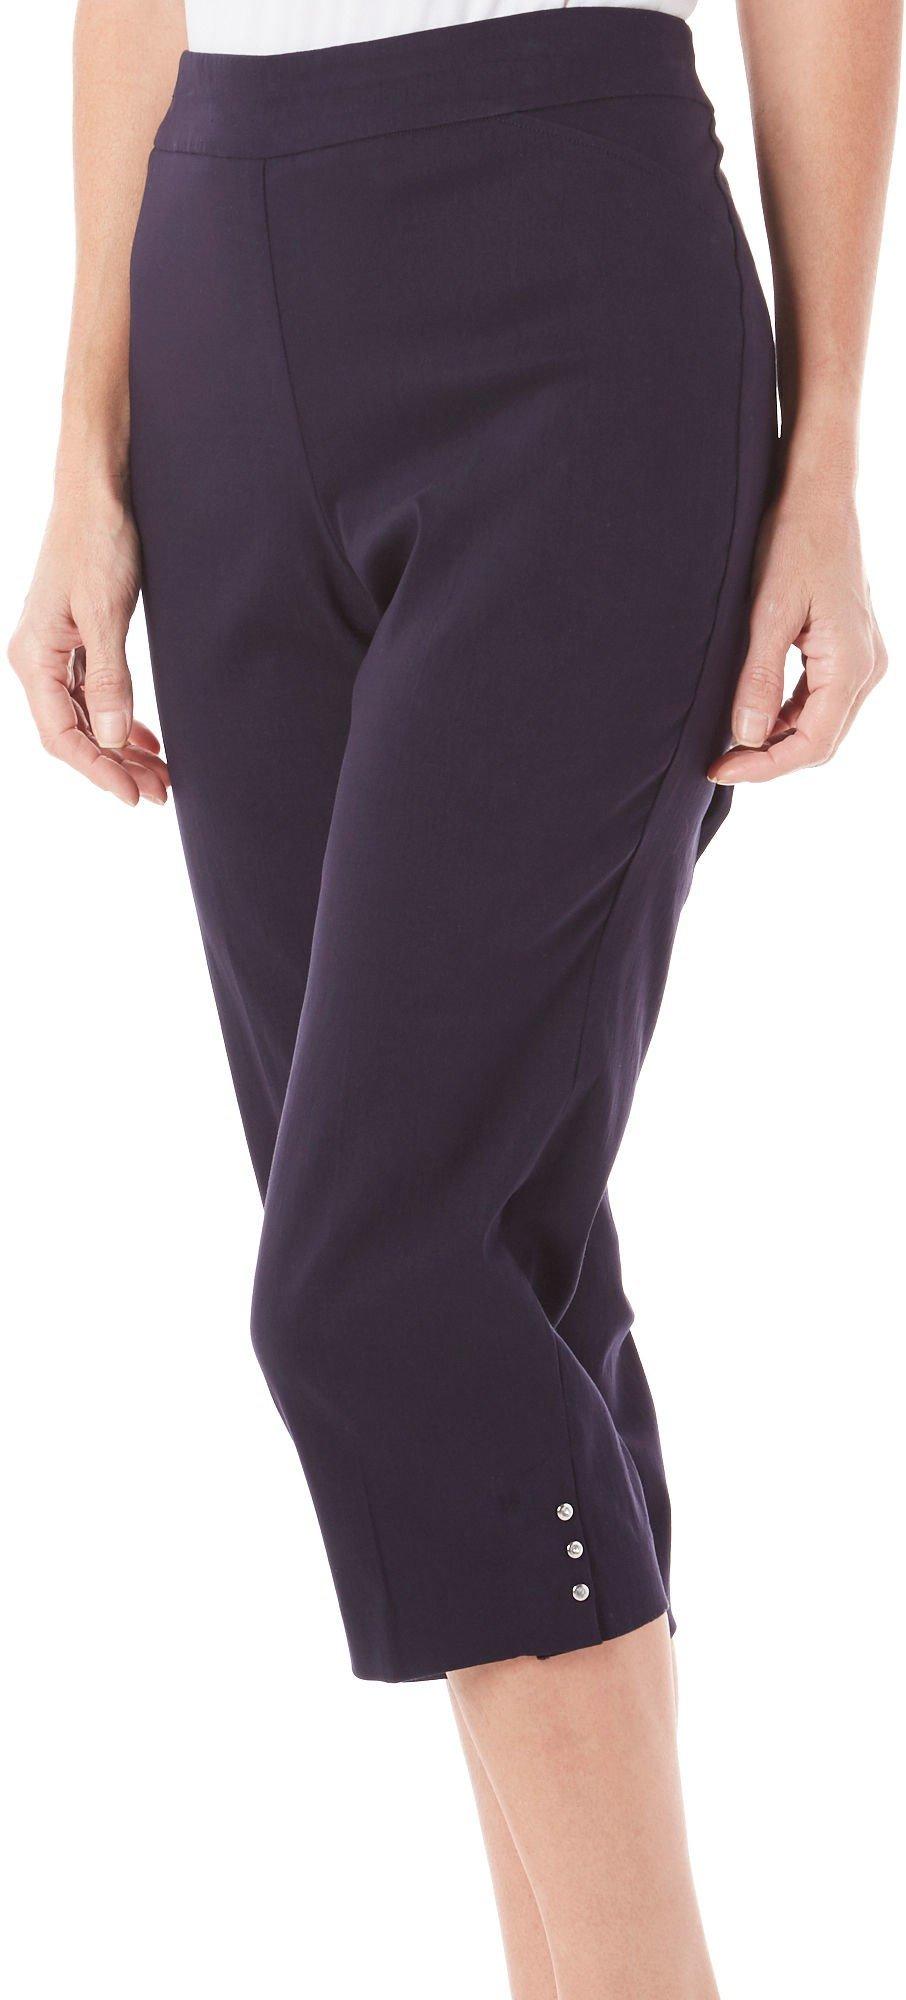 Women's Capri & Crop Pants